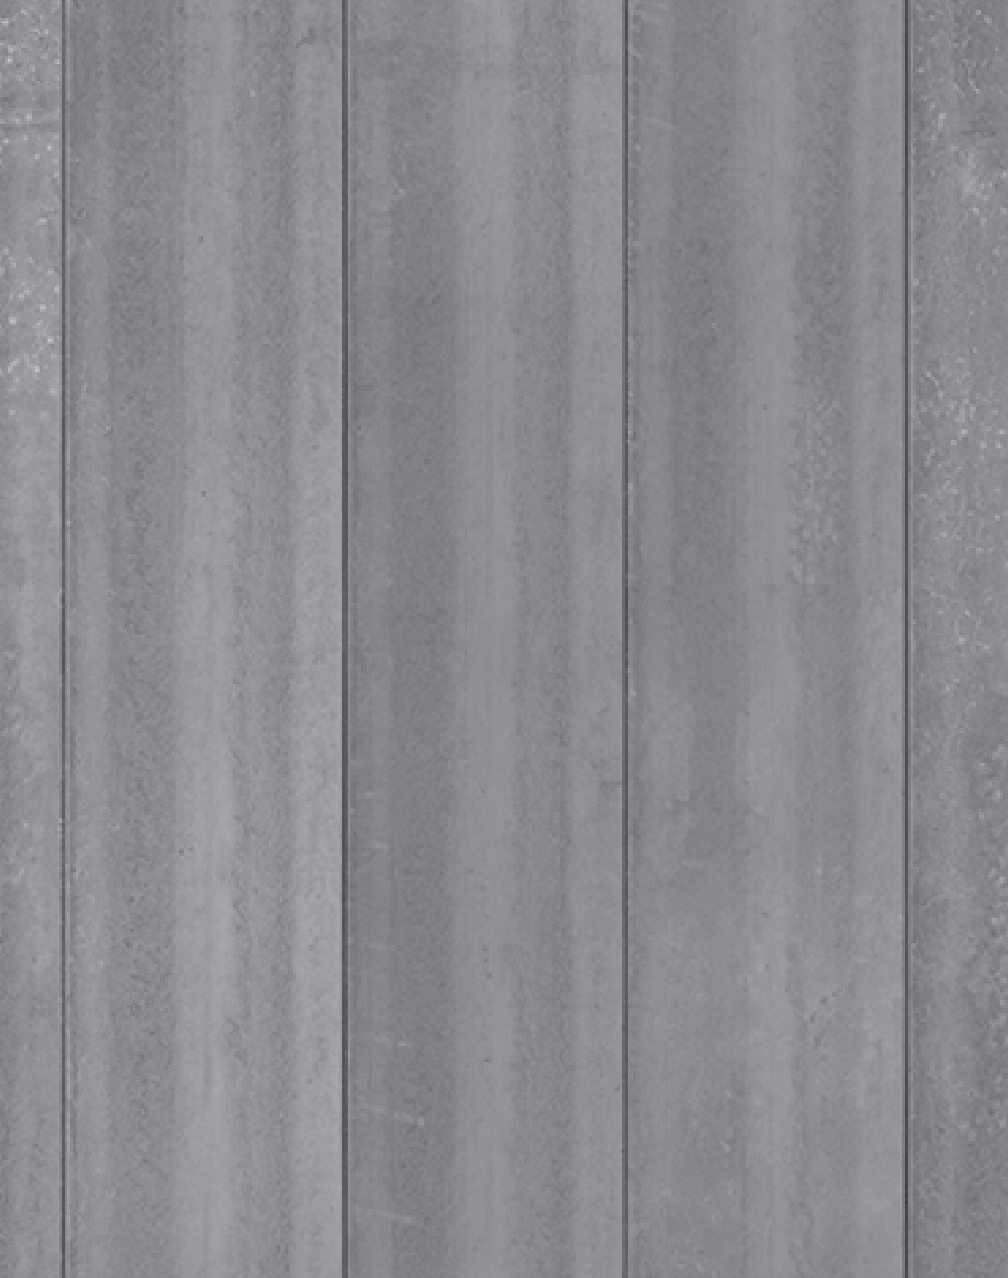 CON-04 Concrete Wallpaper by Piet Boon